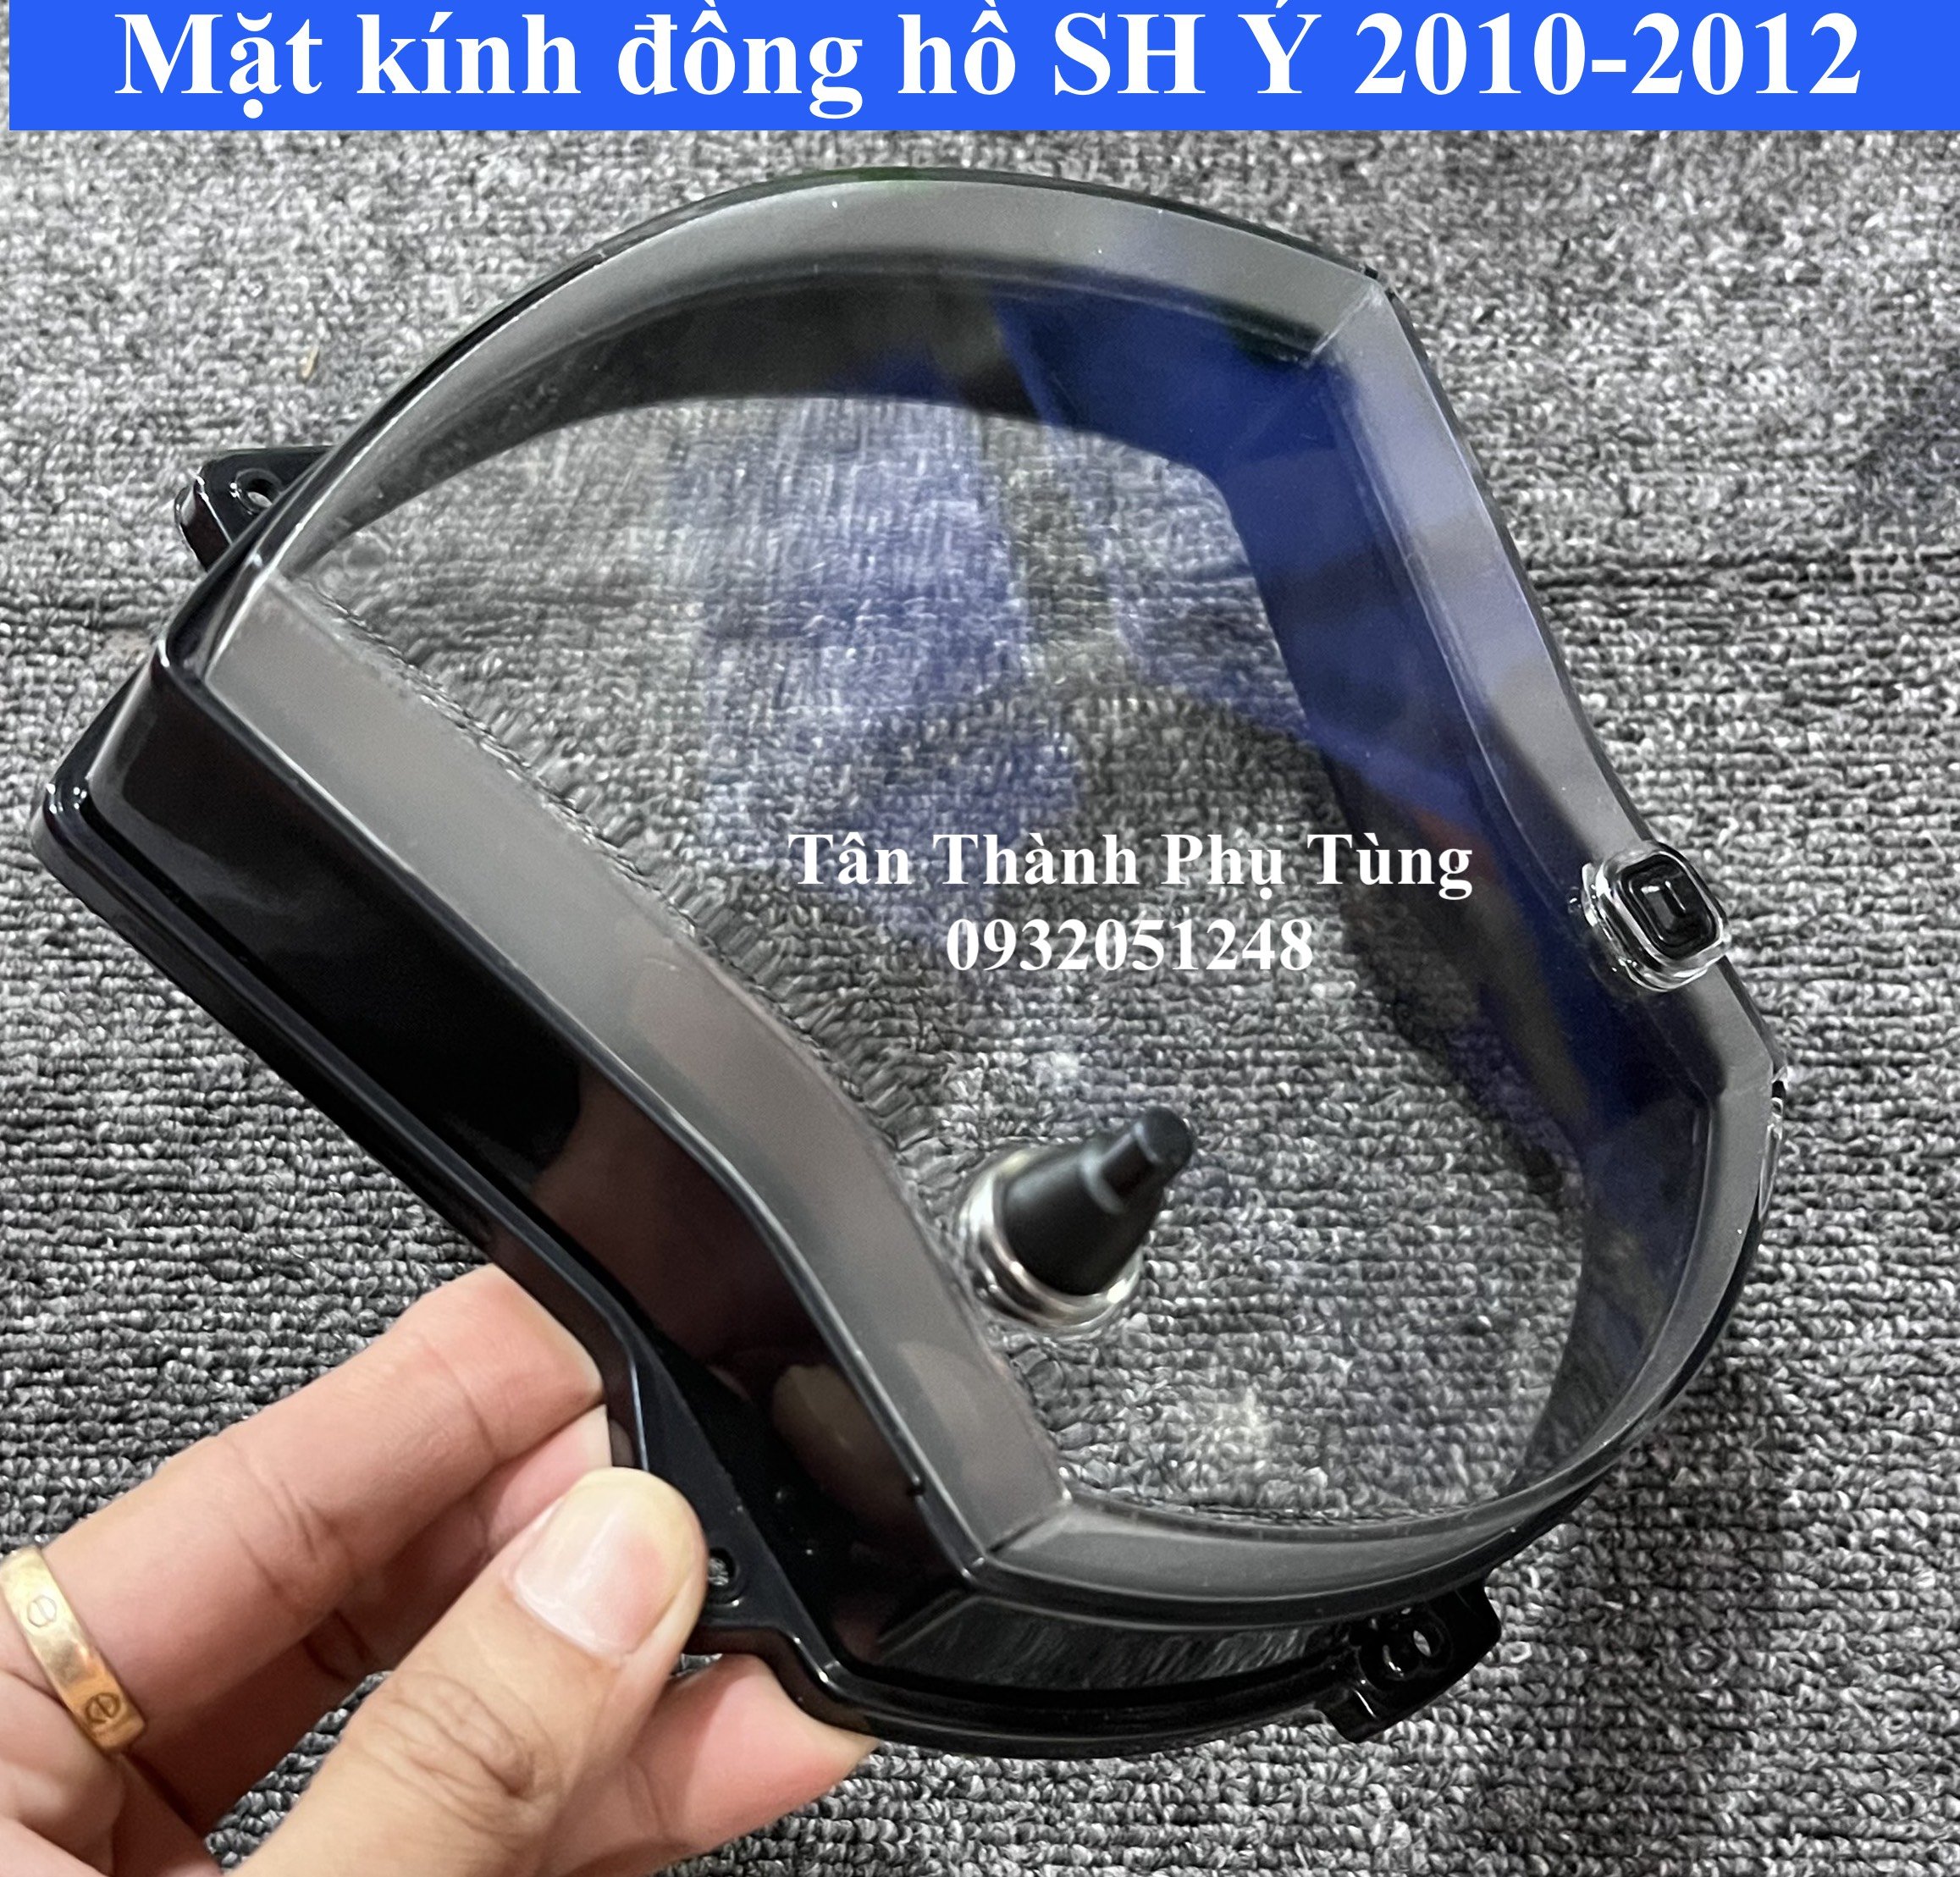 Mặt kính đồng hồ dành cho SH Ý 2010-2012